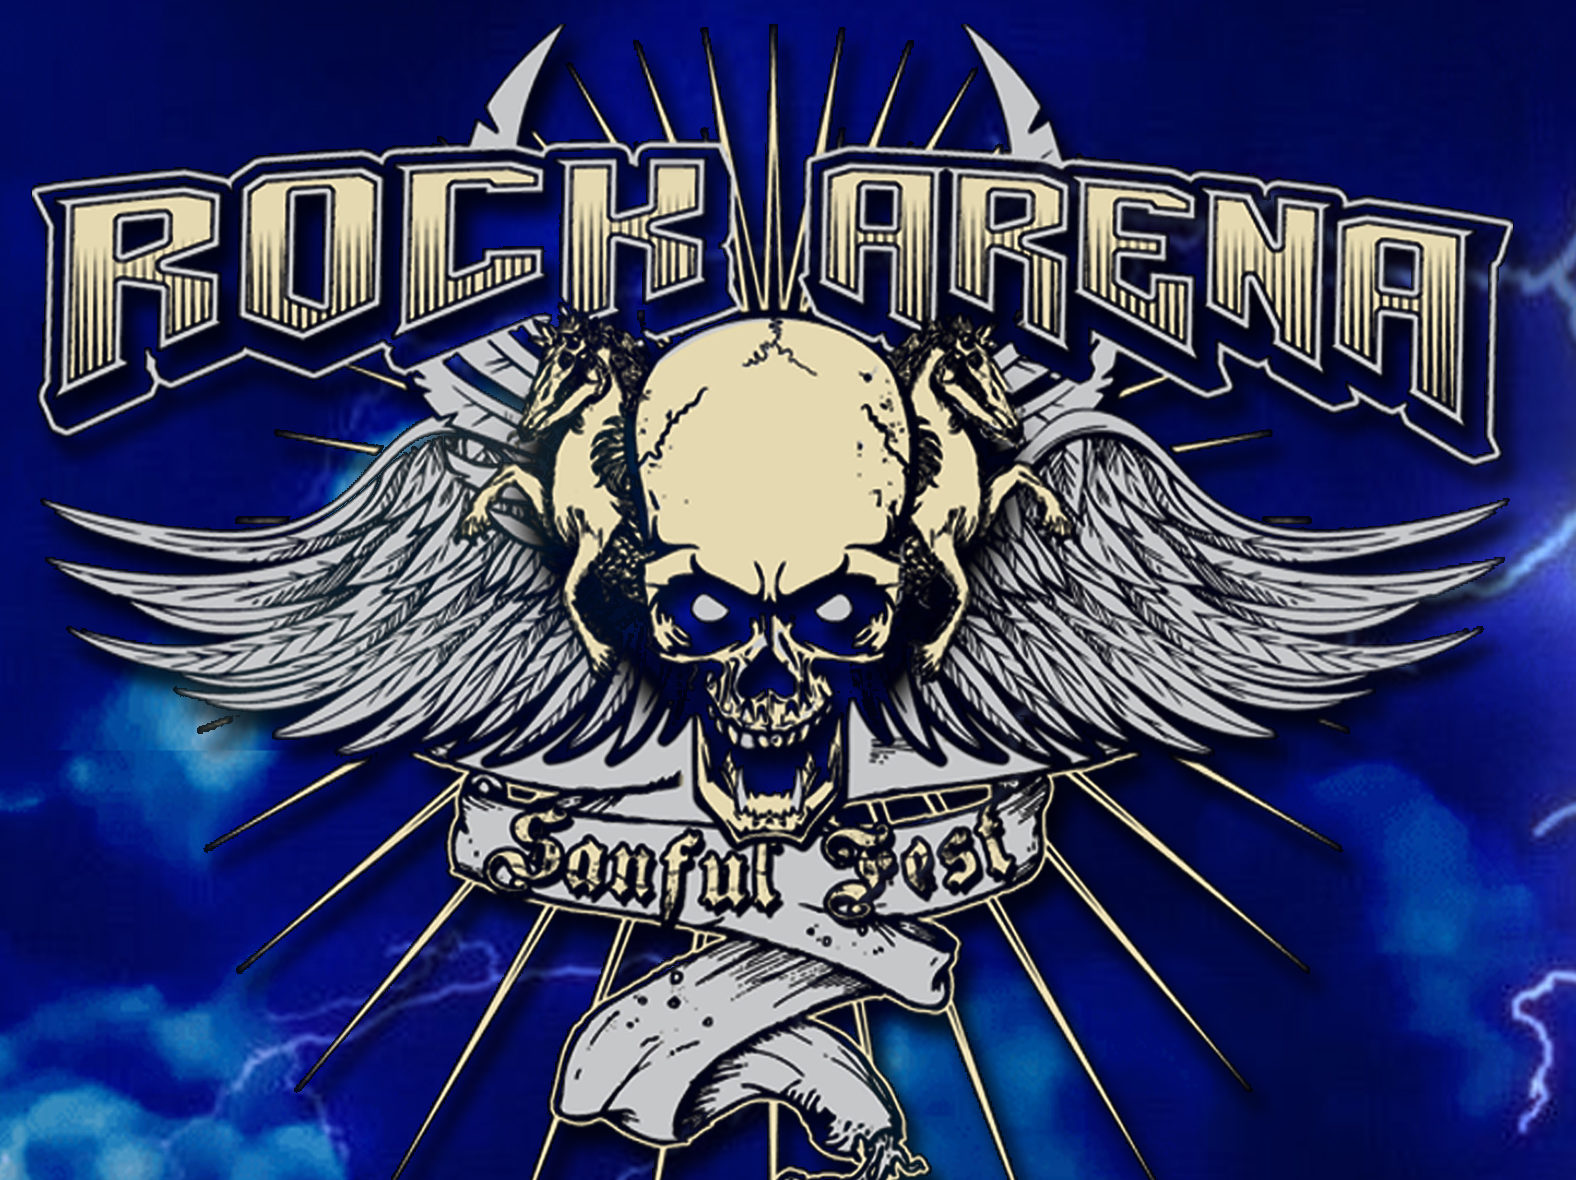 ROCK ARENA – SANFUL EDITION 2020 confirma las primeras bandas